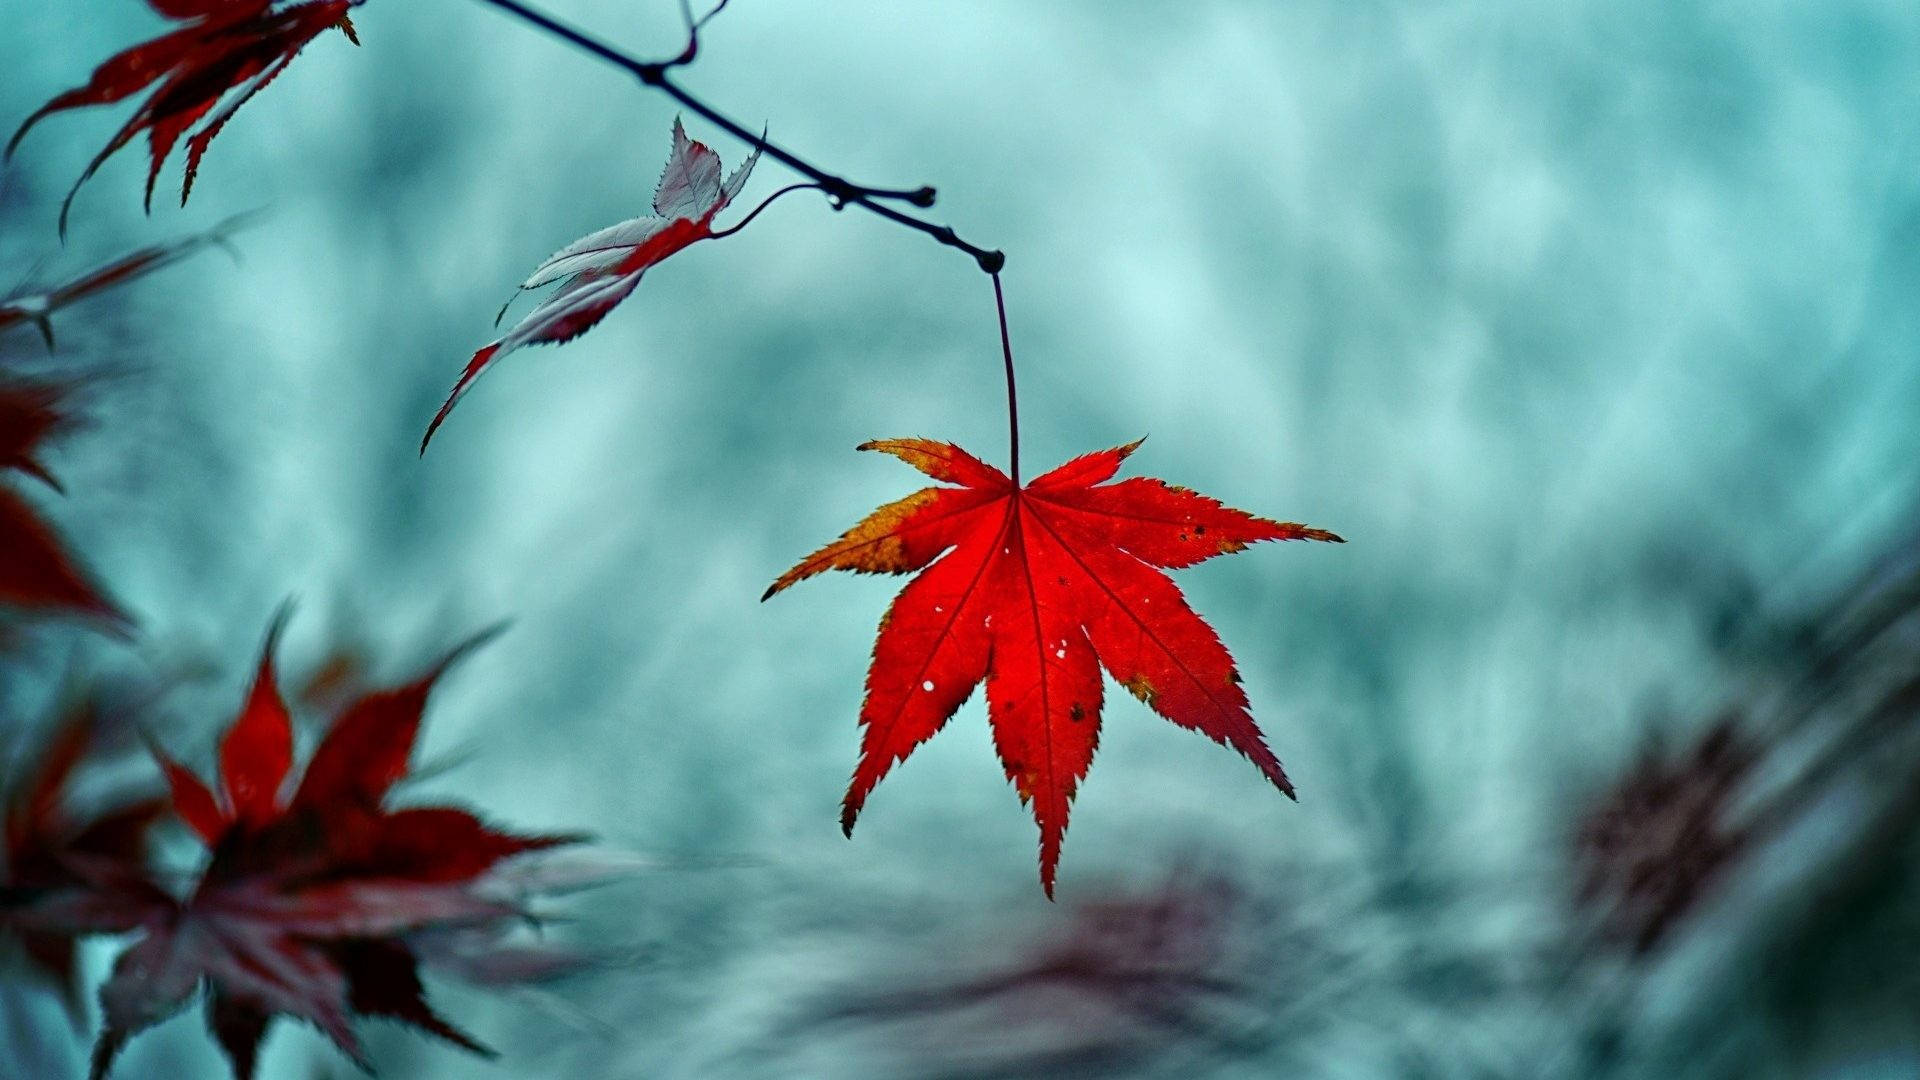 Herbstlicheshintergrundbild Mit Roten Blättern Wallpaper